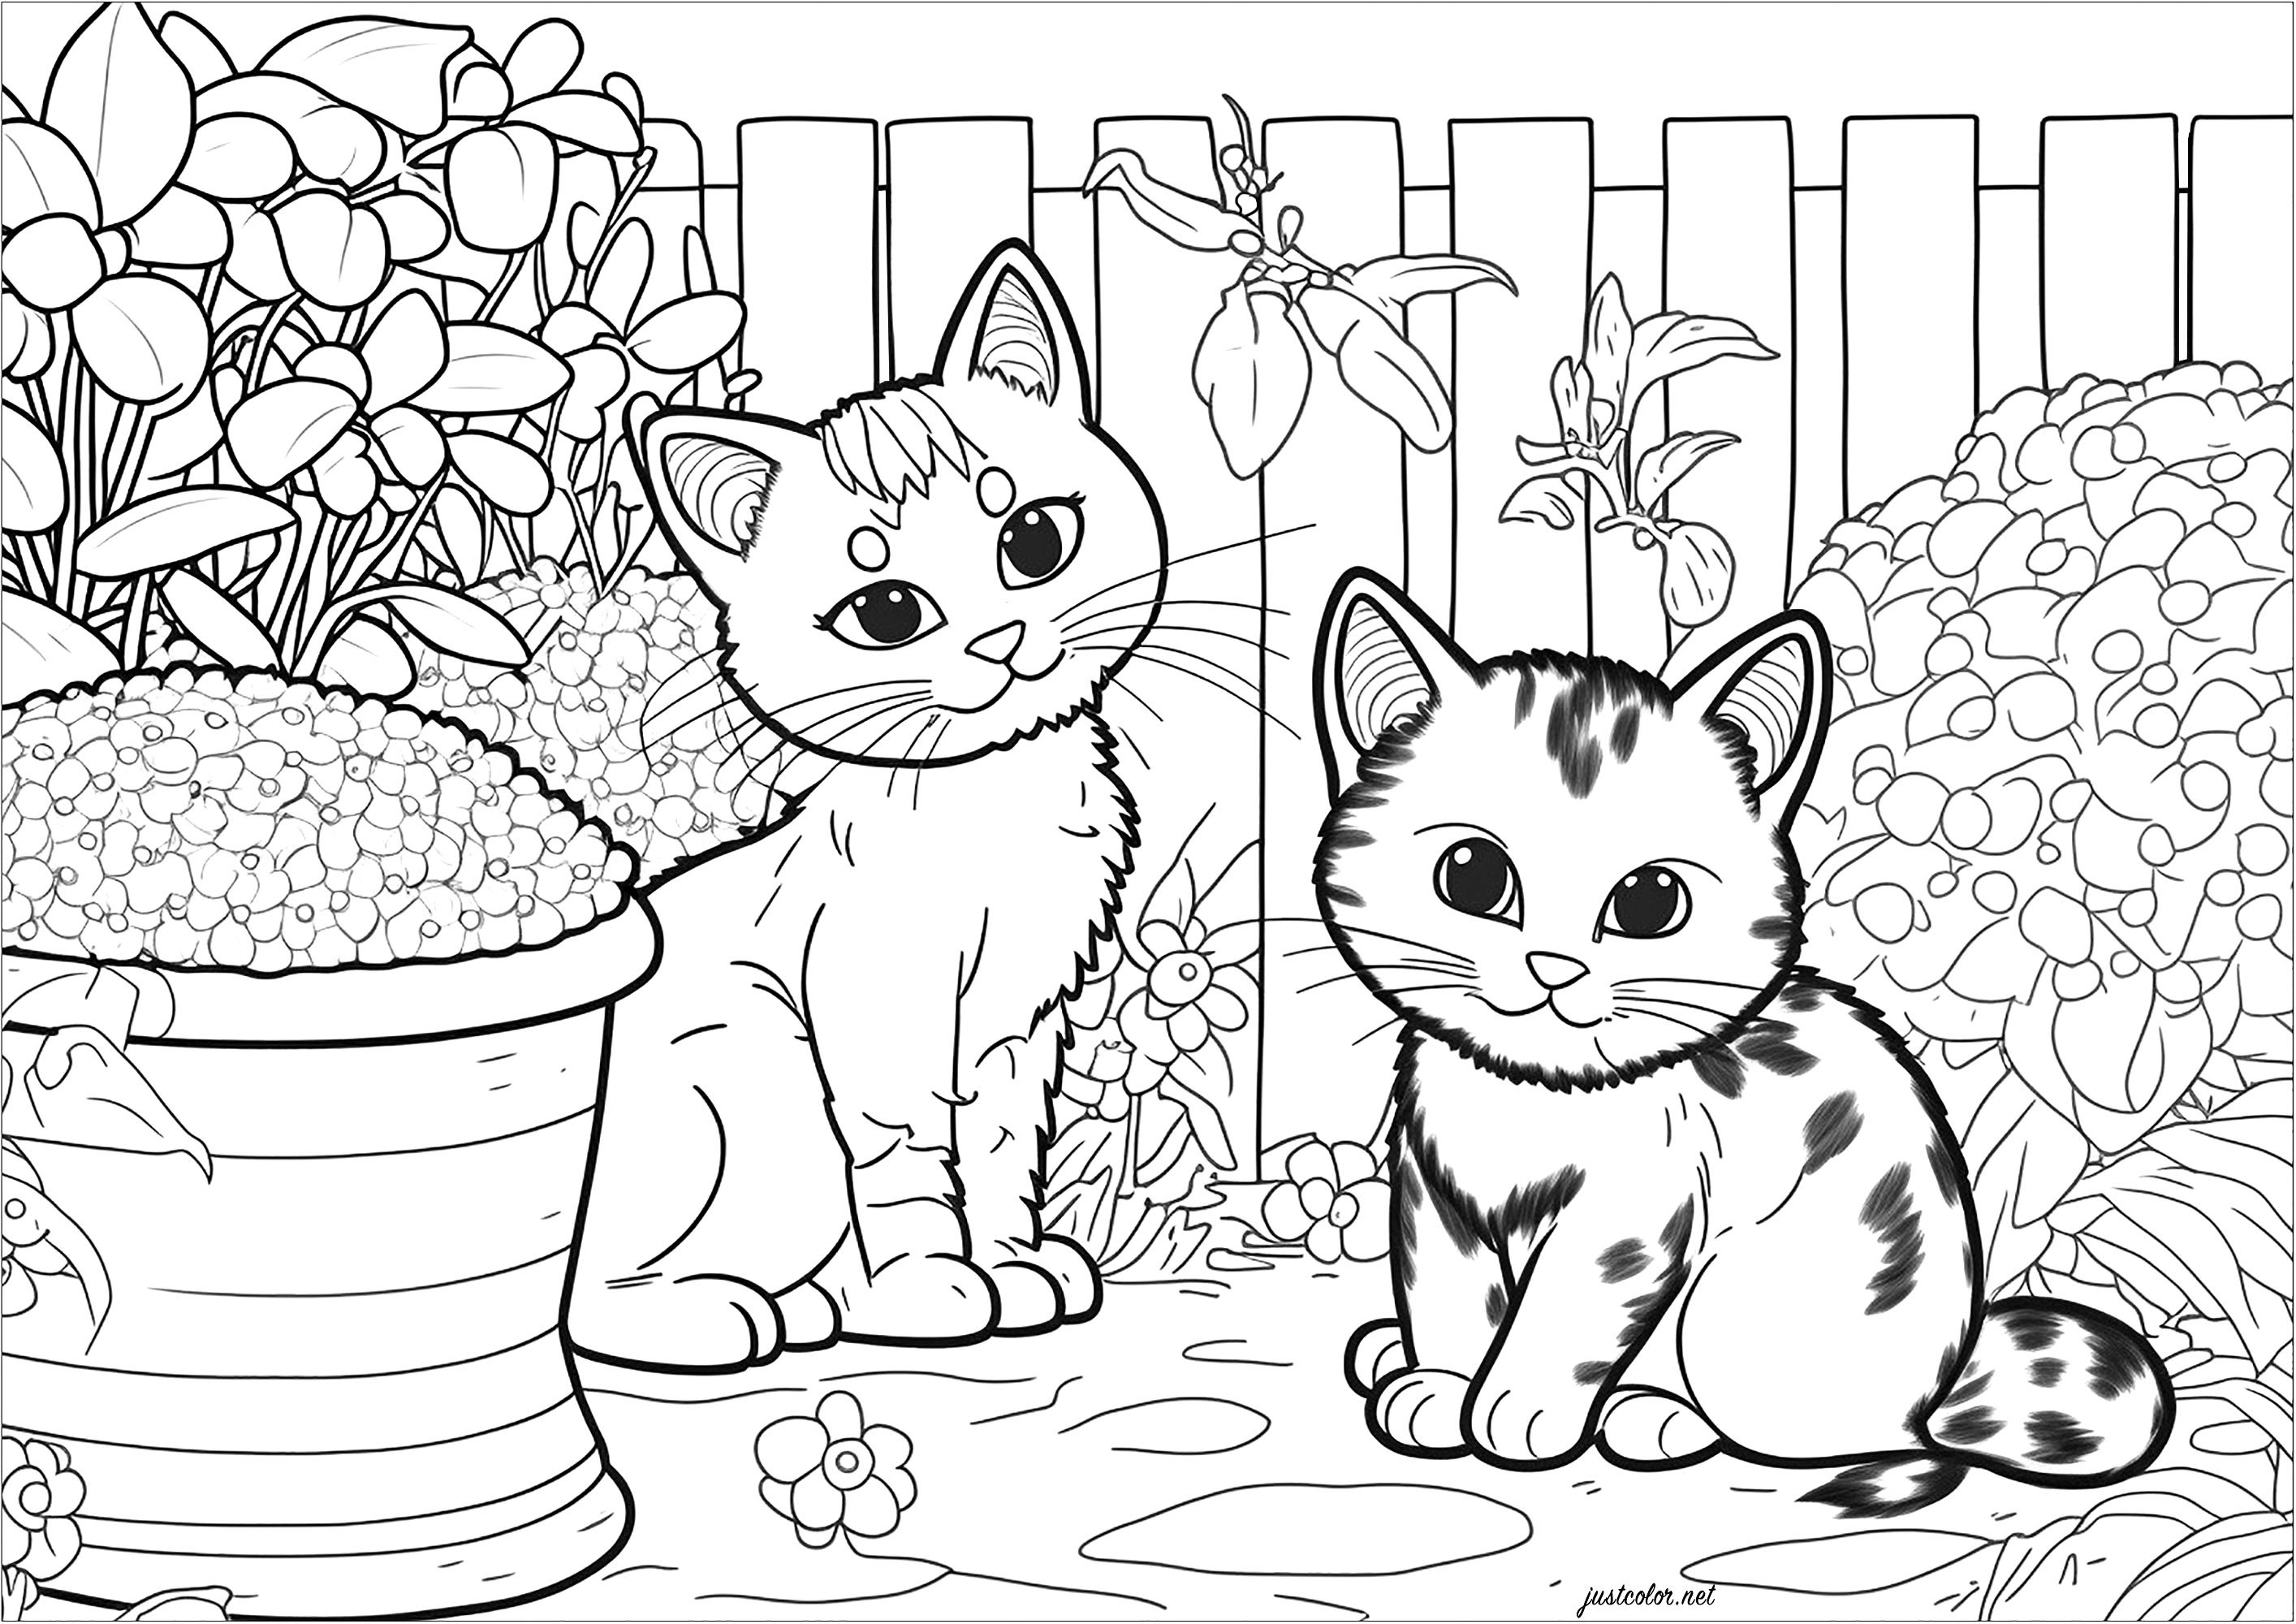 Dos gatitos en el jardín para colorear. Esta página para colorear es tan bonita como relajante. Representa a dos gatitos jugando en un jardín. Los gatos están rodeados de diversos elementos vegetales, como flores, arbustos, árboles y hierba. Es una forma estupenda de evadirse en un mundo de color y naturaleza.